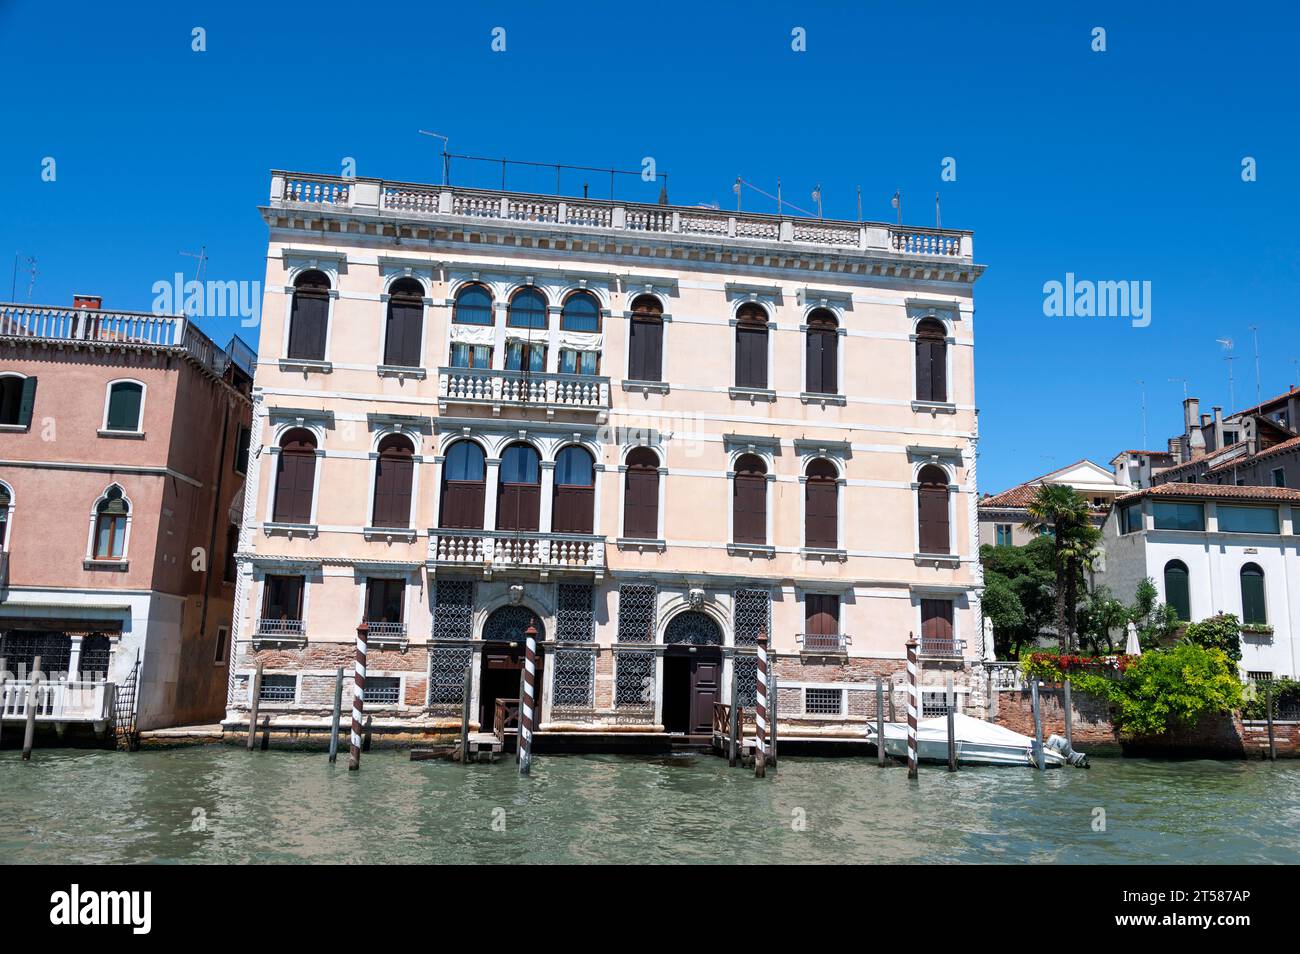 Palazzo Correr Contarini, also known as Ca' dei Cuori, is a historic ...